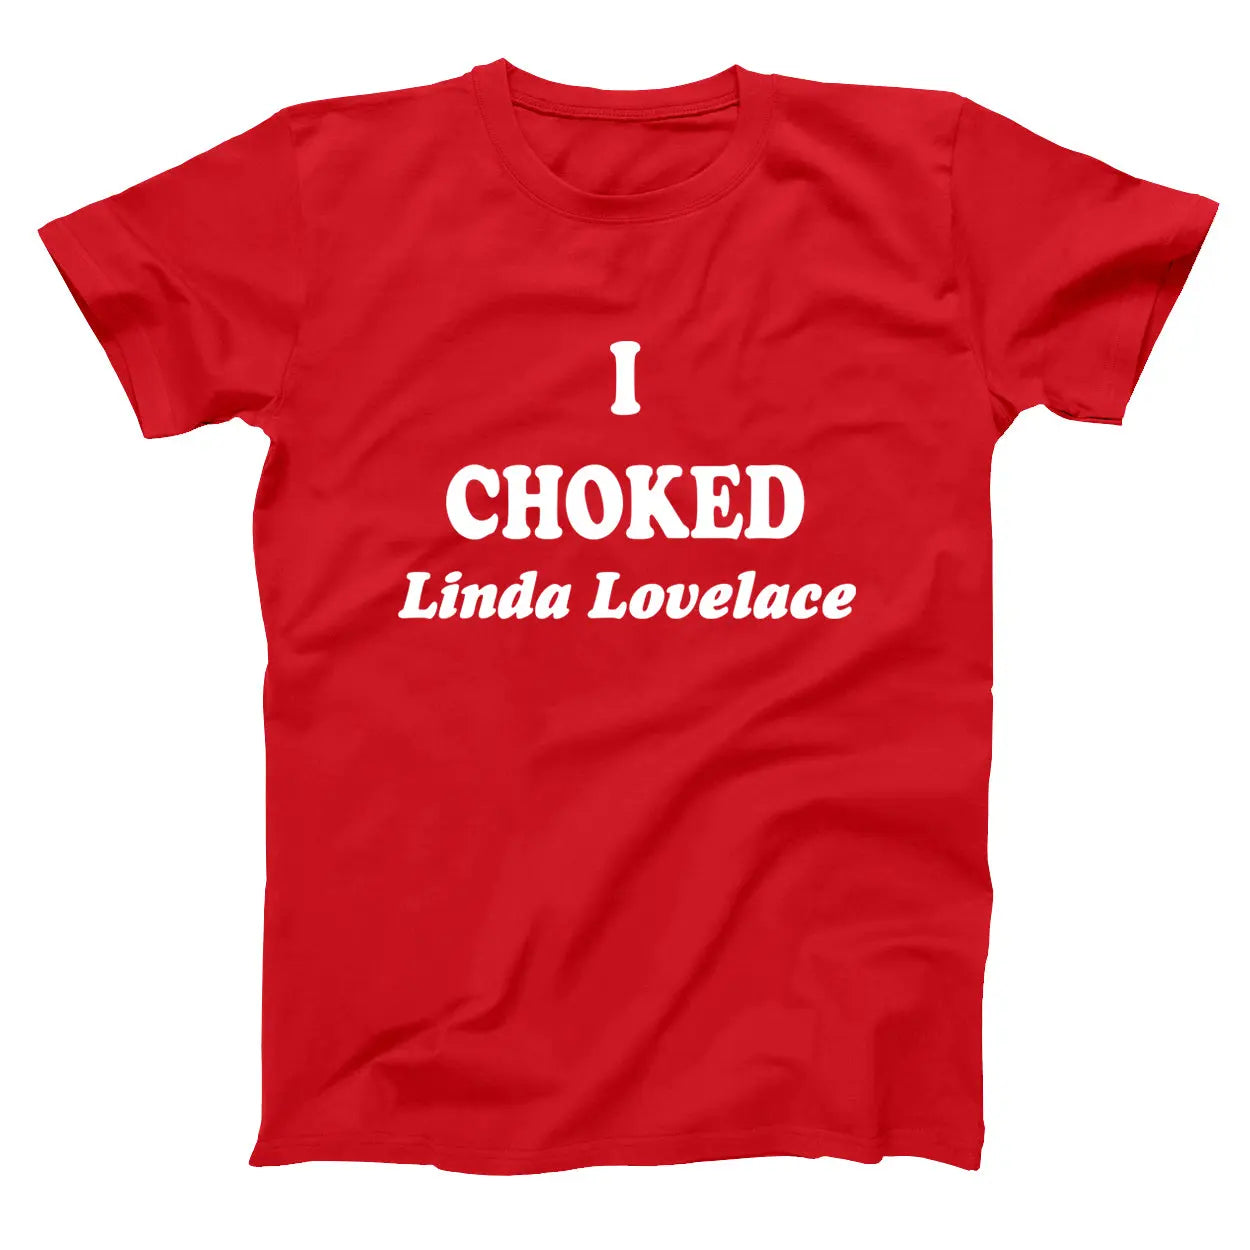 I Choked Linda Lovelace Tshirt - Donkey Tees